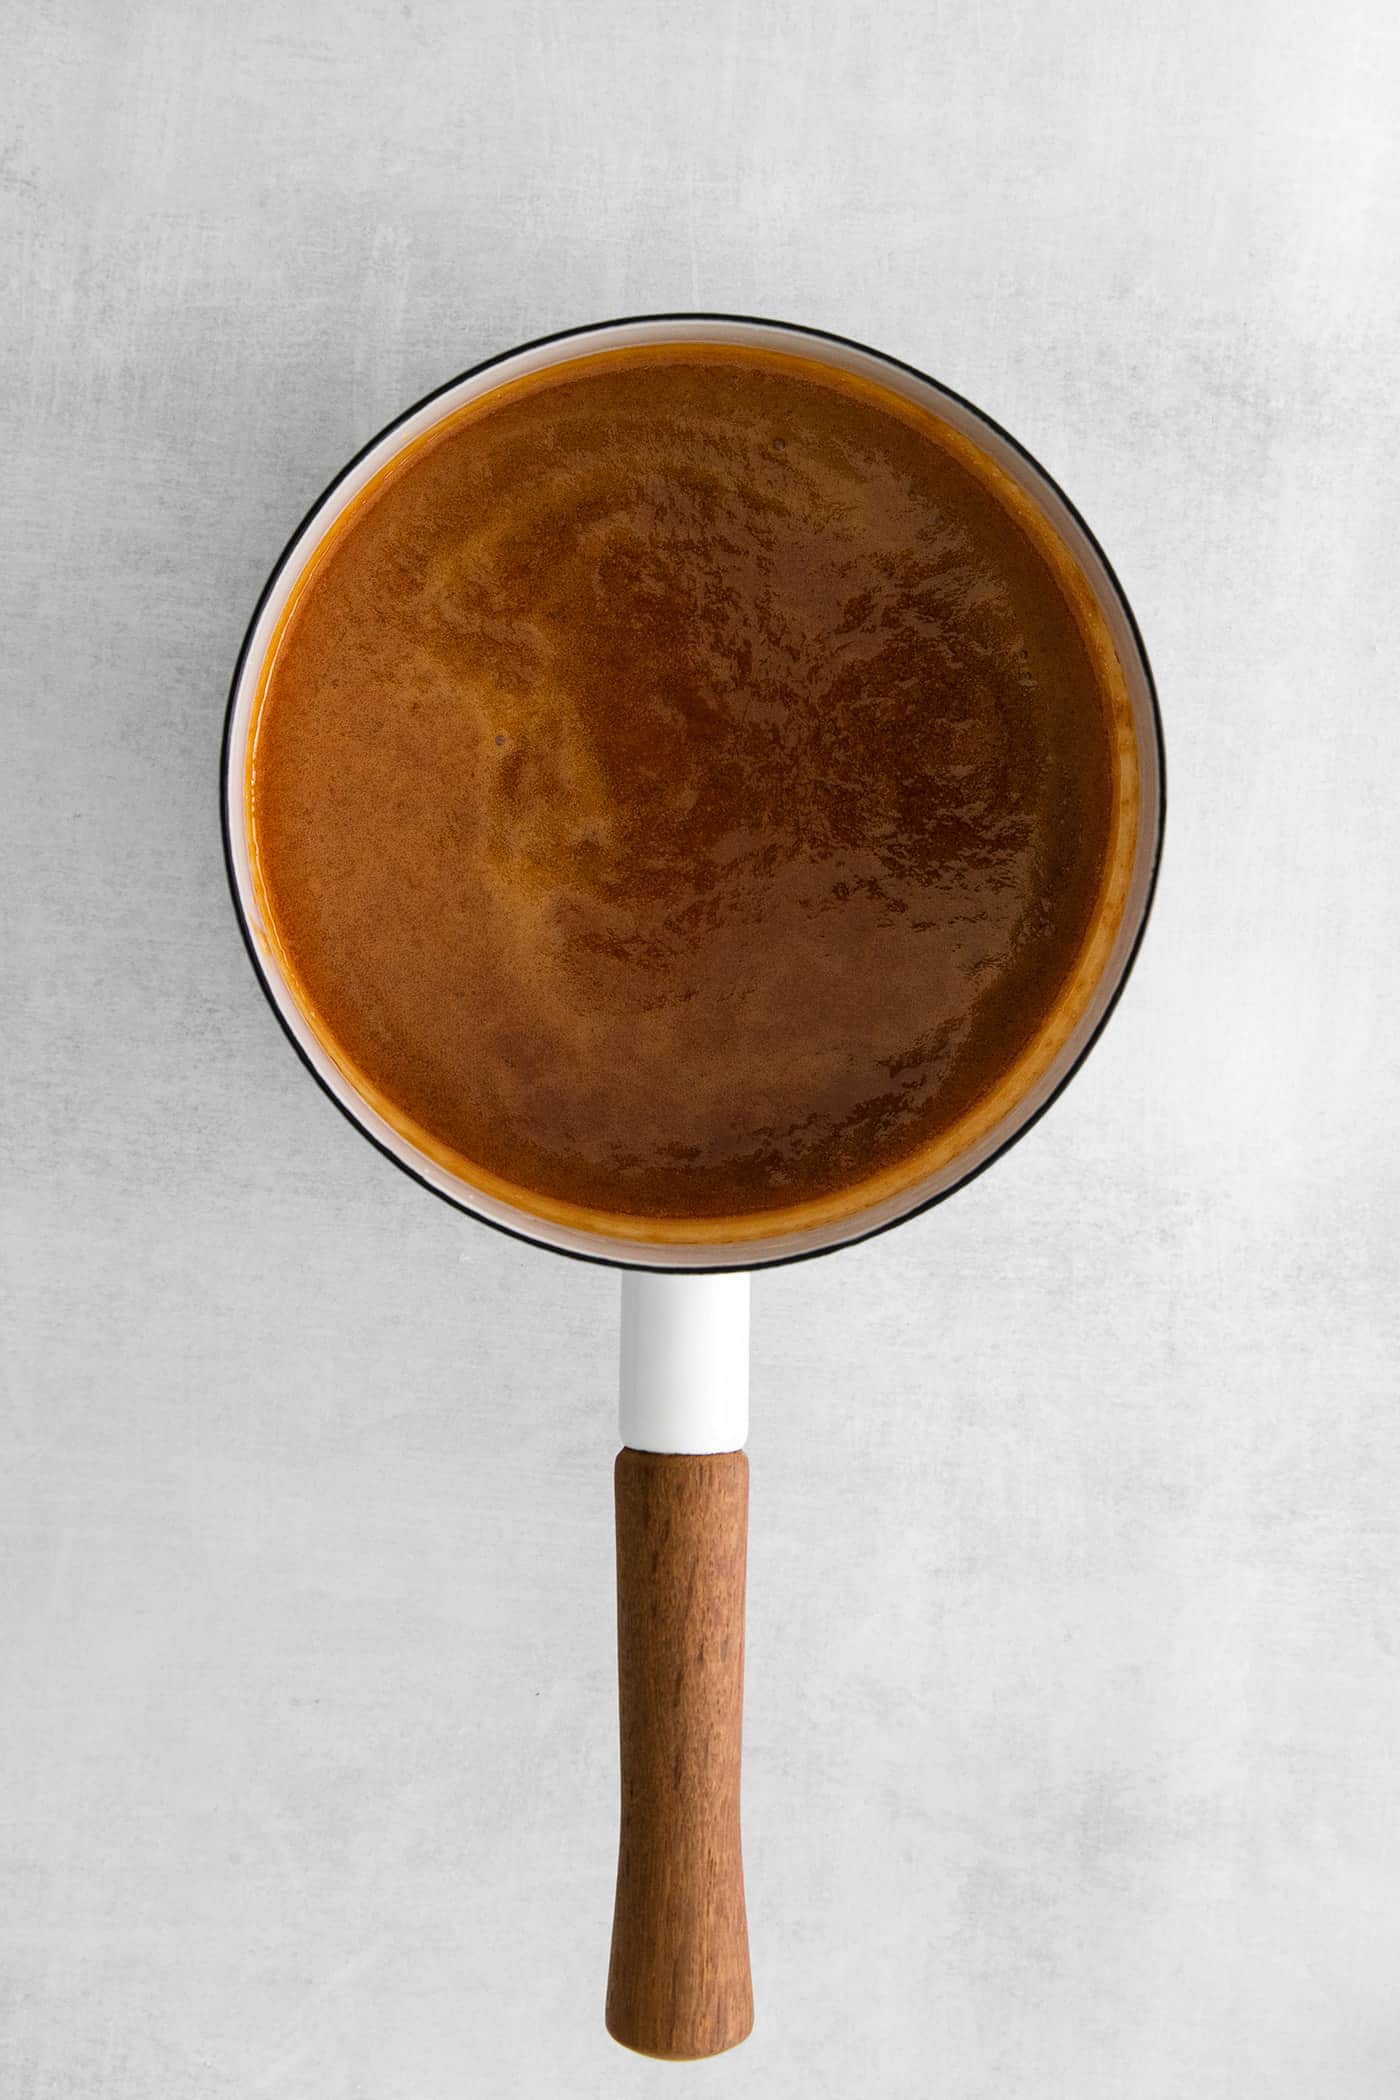 Dark caramel in a sauce pan